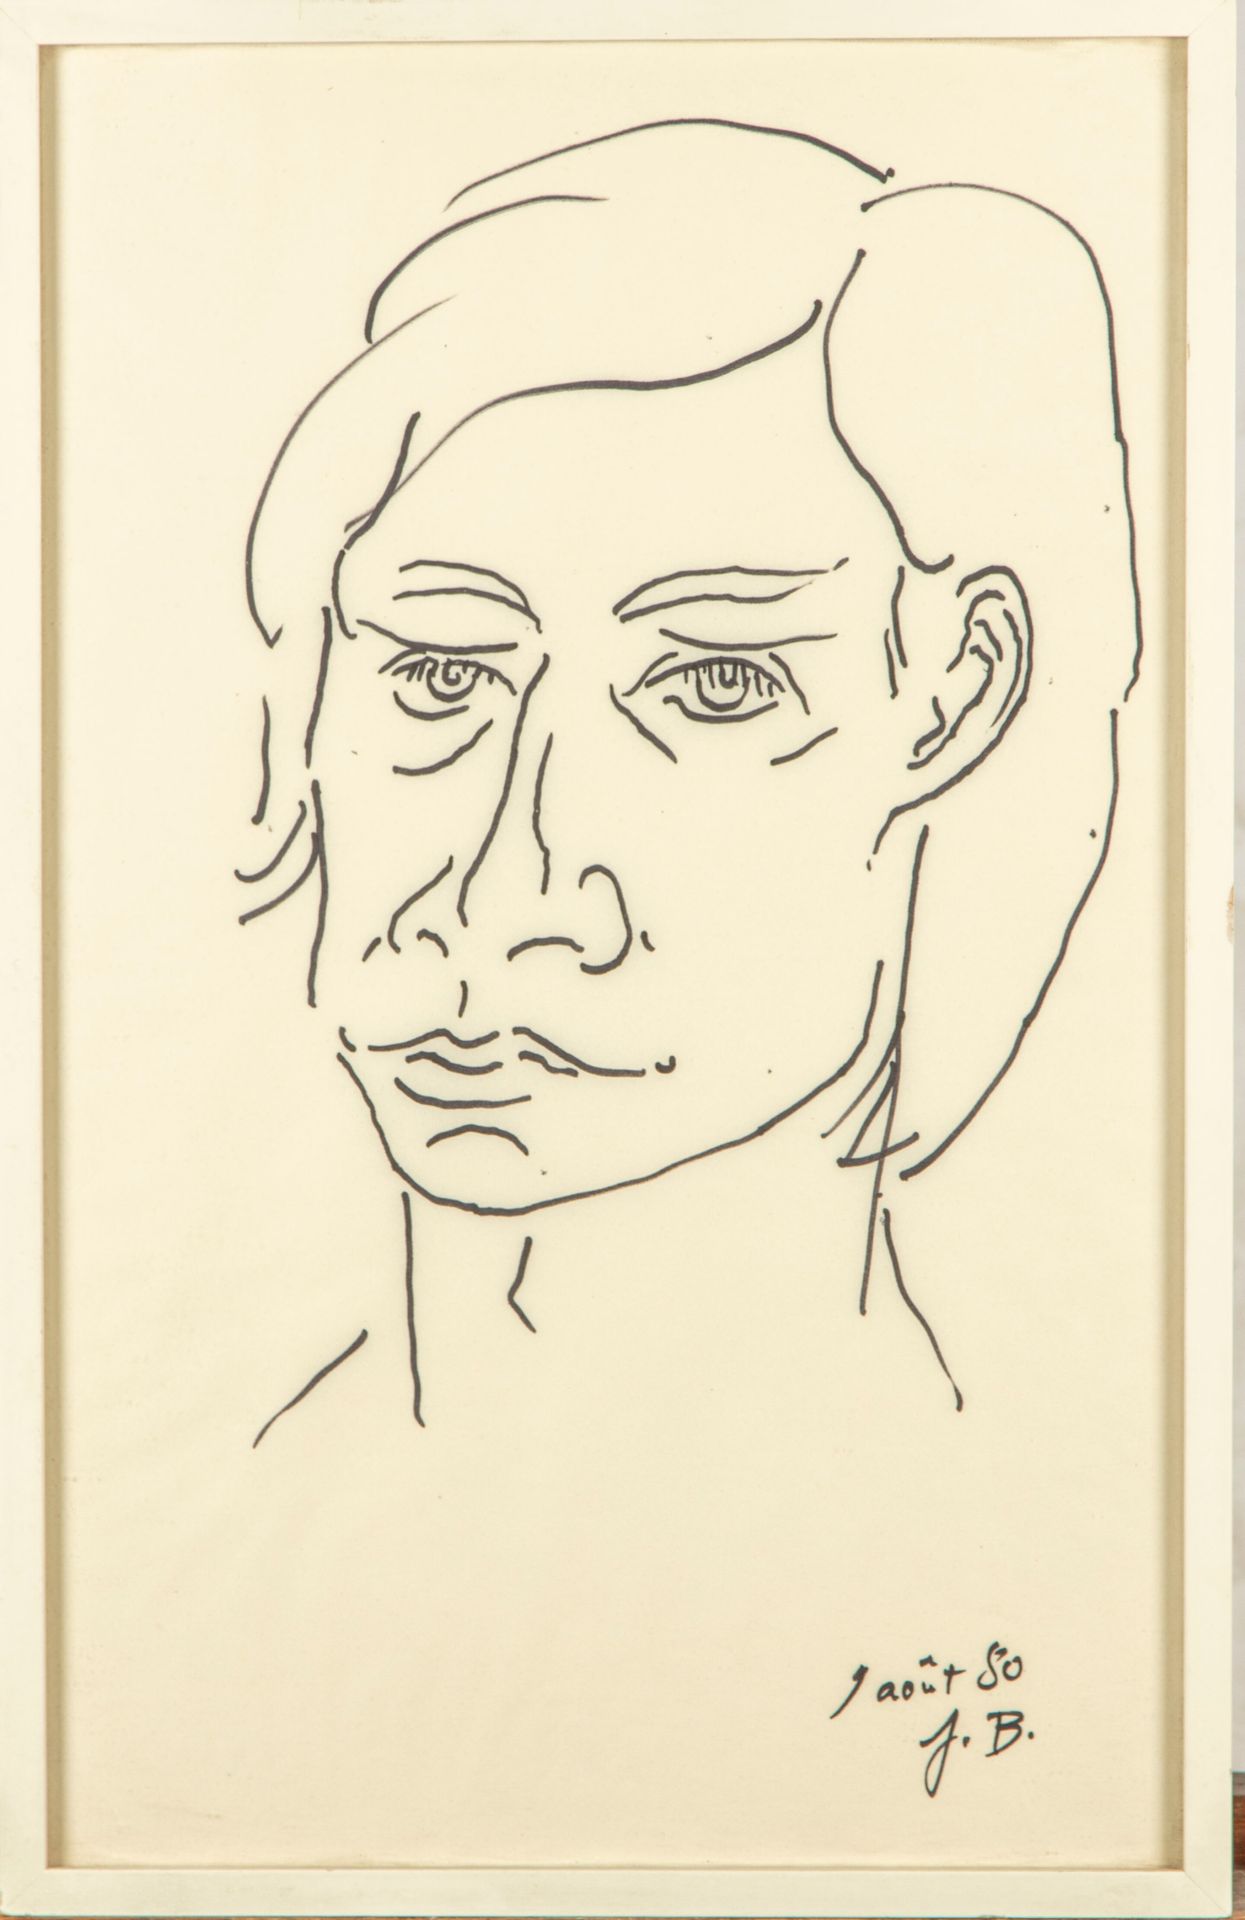 Null 雅克-布什(1922-2004)

形象代言人

图画，右下角有题名和日期 "1980年8月9日

42 x 26 cm